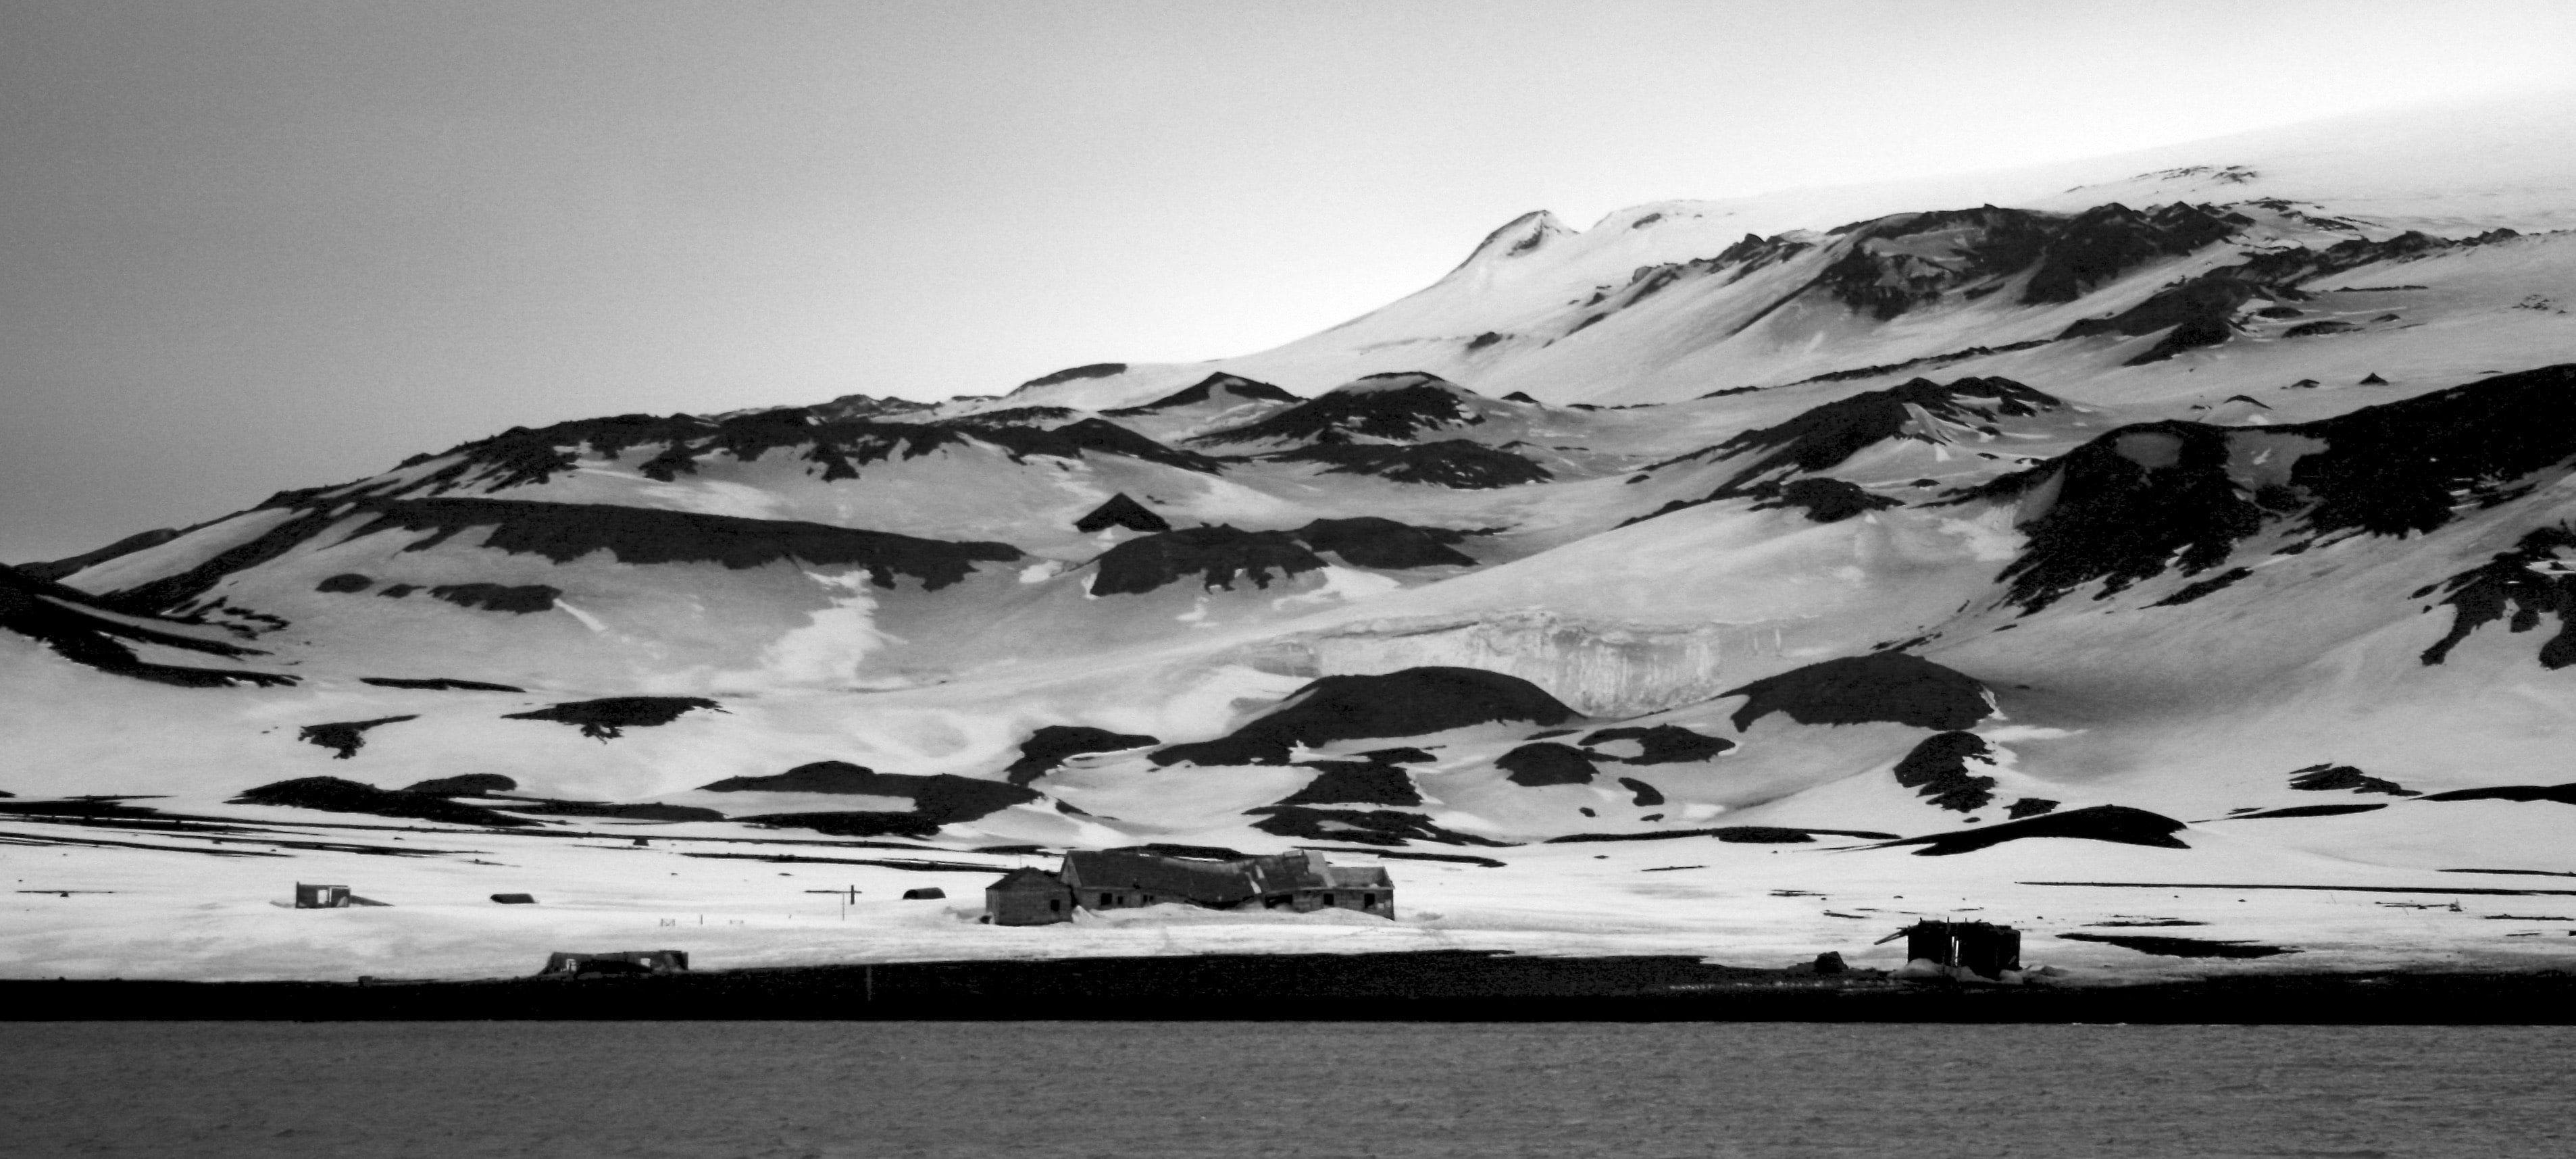 Deception Island, Antarctica